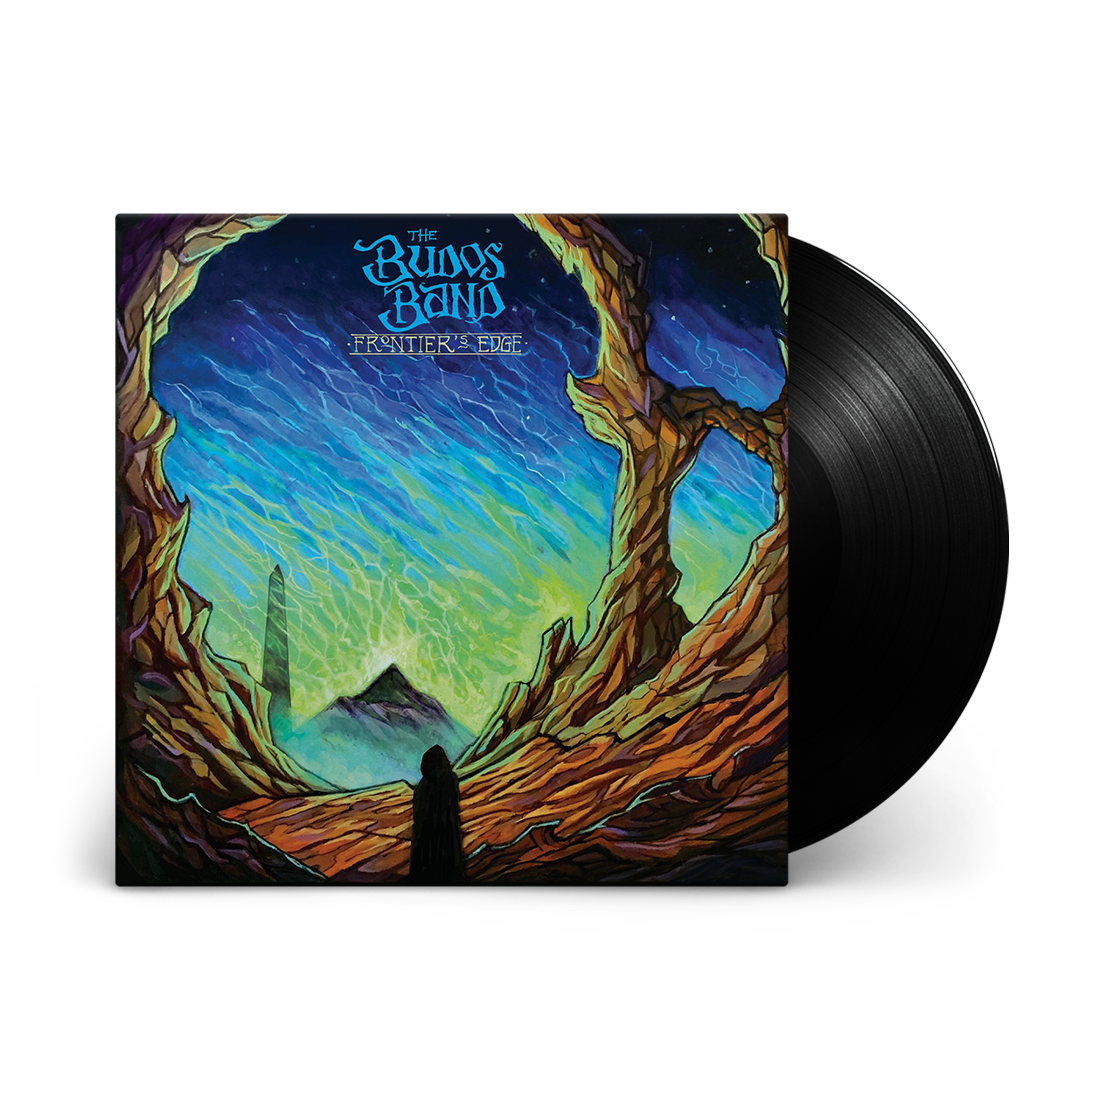 Frontier's Edge: Vinyl LP